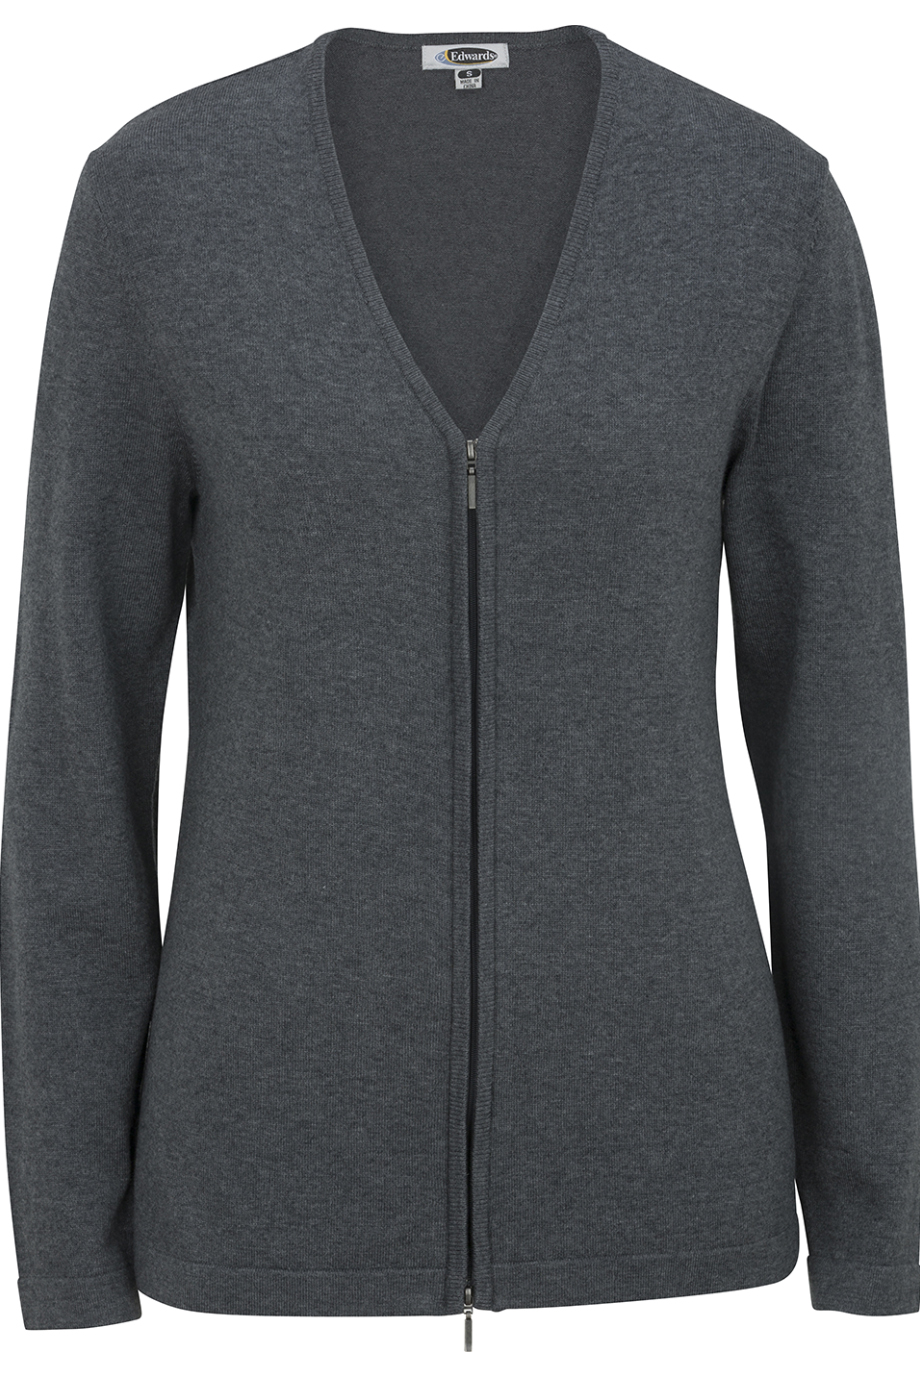 Ladies' Full Zip V-Neck Cardigan Sweater 7062